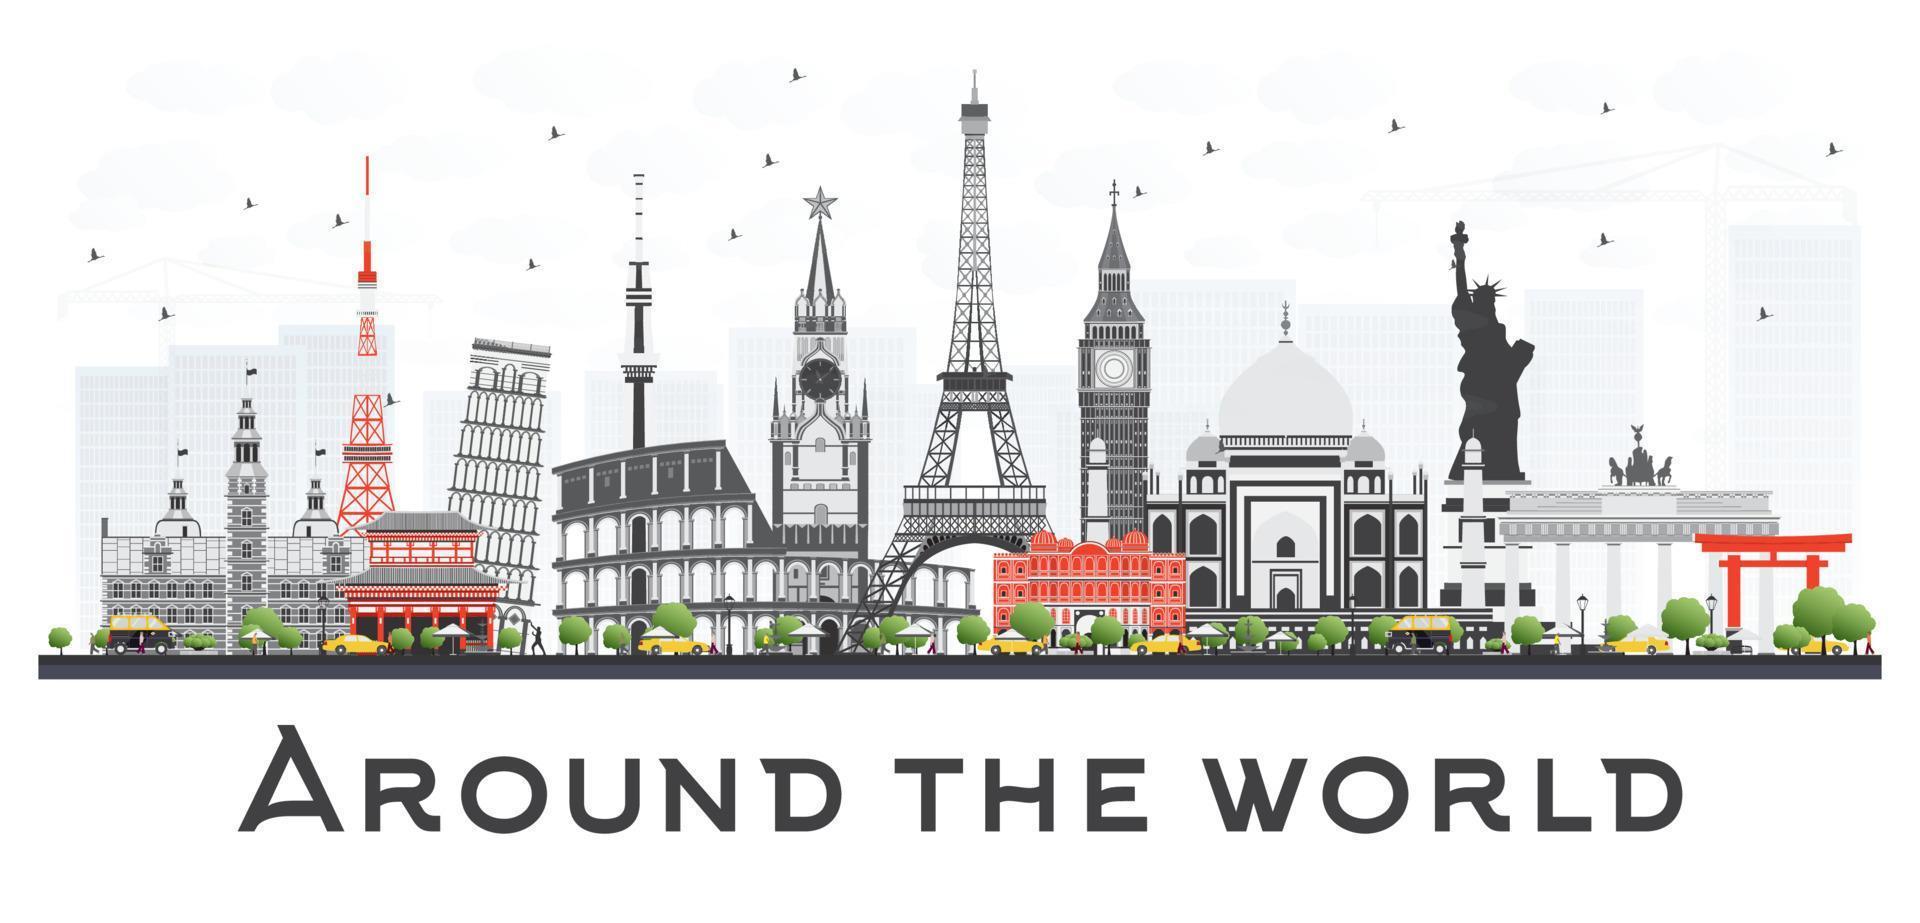 concepto de viaje alrededor del mundo con famosos monumentos internacionales. vector